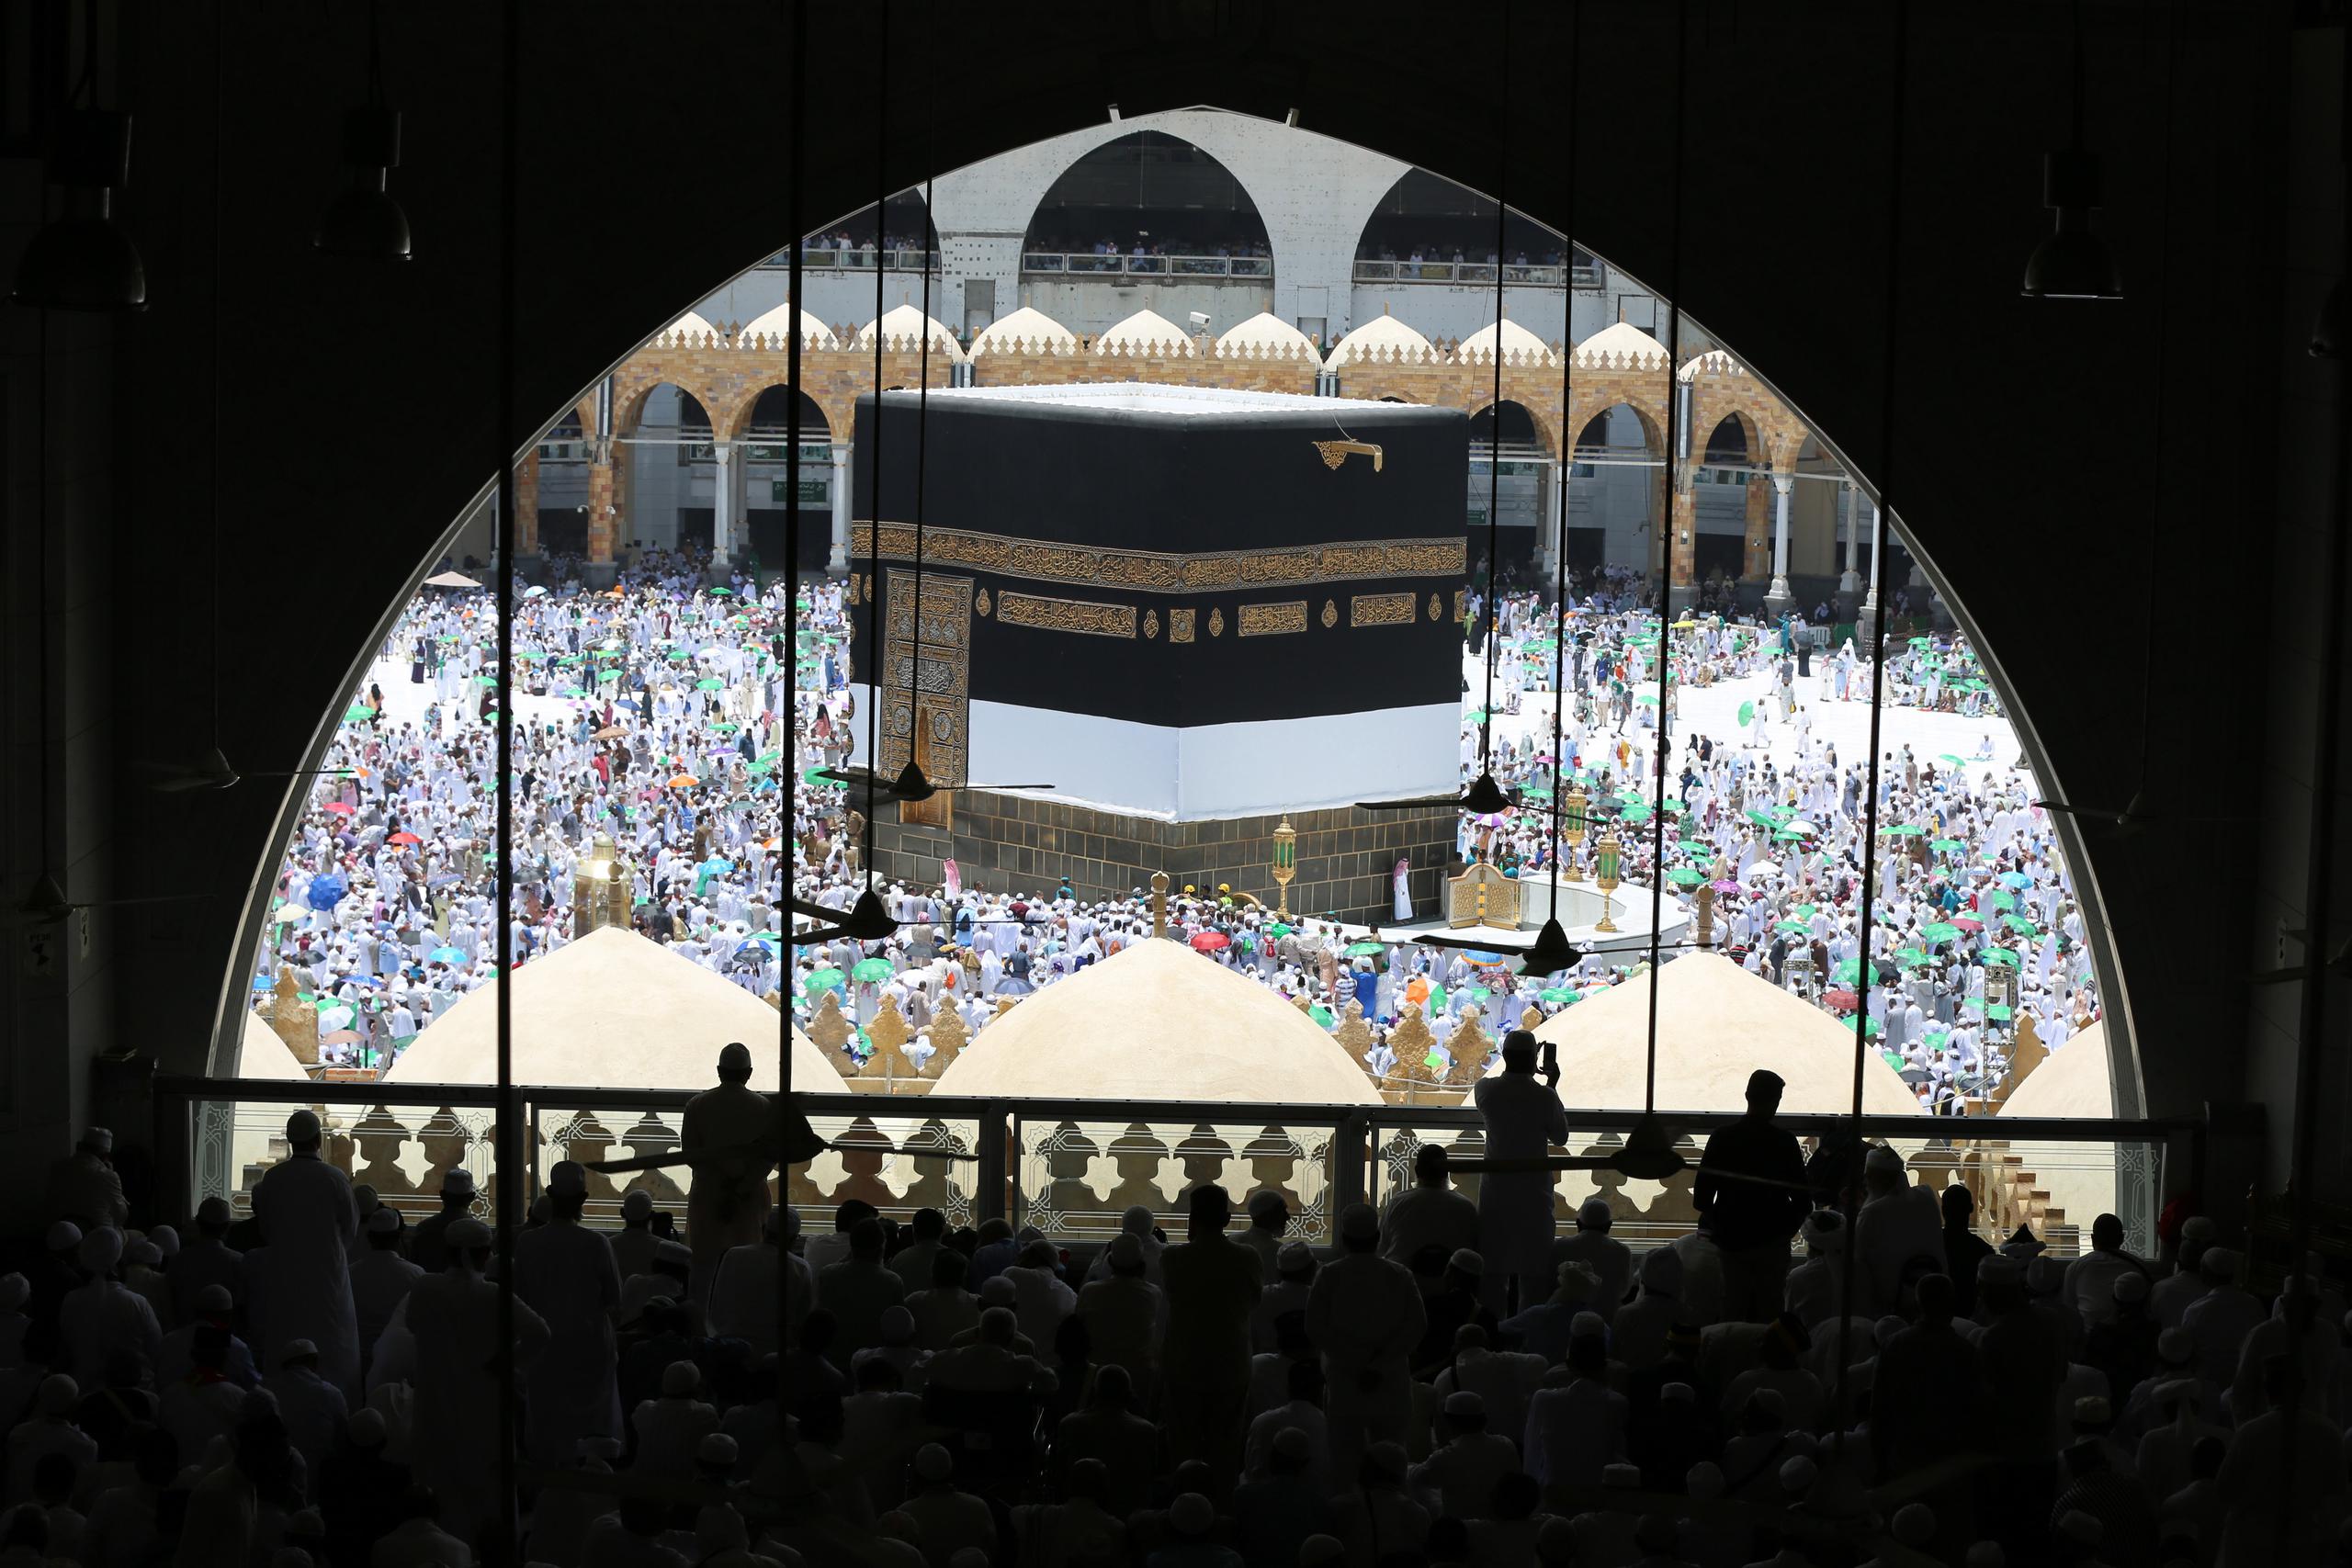 En 2019, casi 2.5 millones de musulmanes realizaron la peregrinación anual, un cuarto de ellos saudíes, según datos de la Autoridad General de Estadísticas de Arabia Saudí.